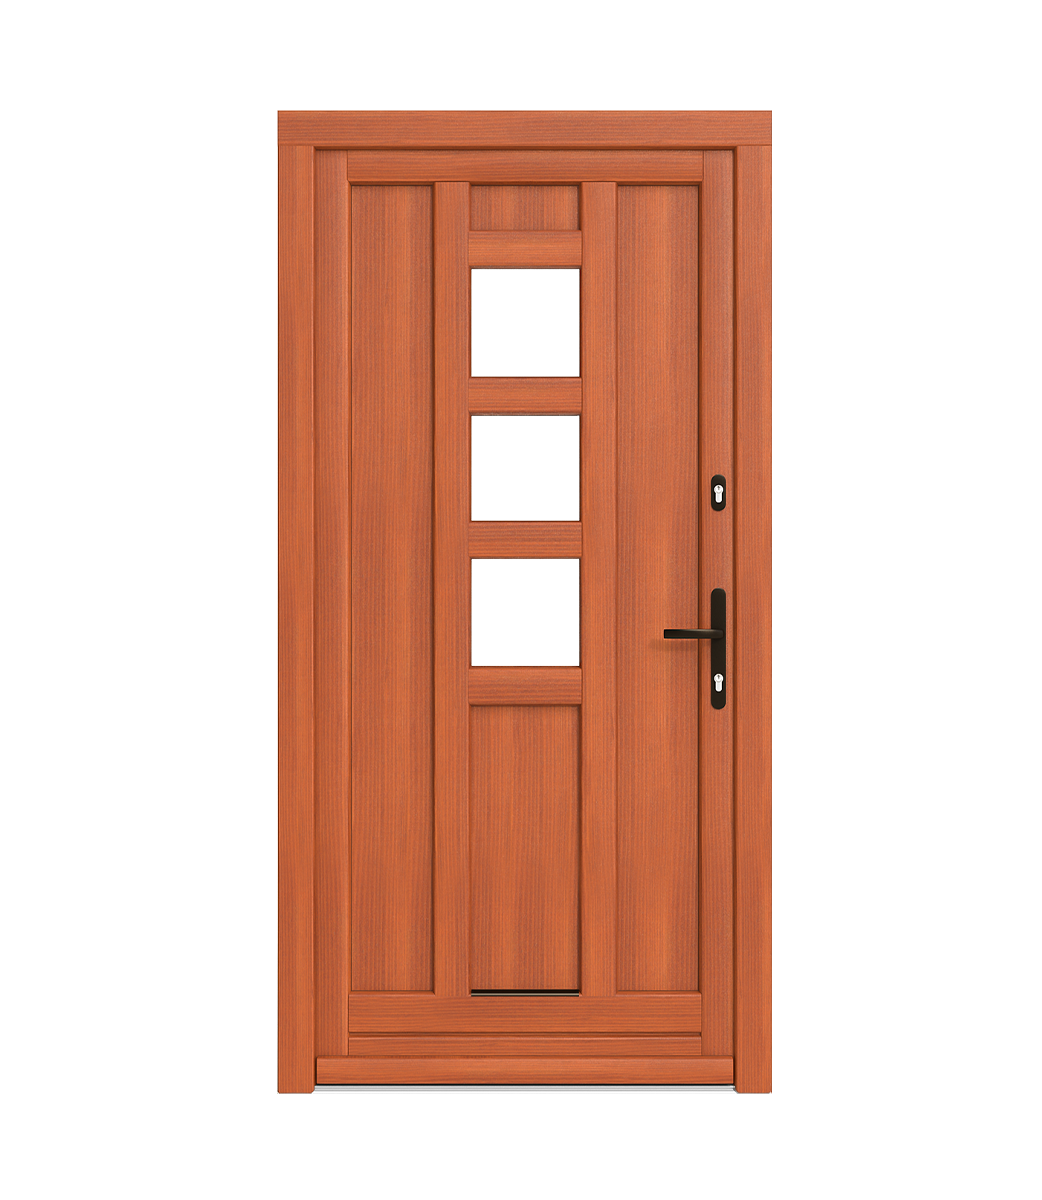 Soportes de madera para puertas